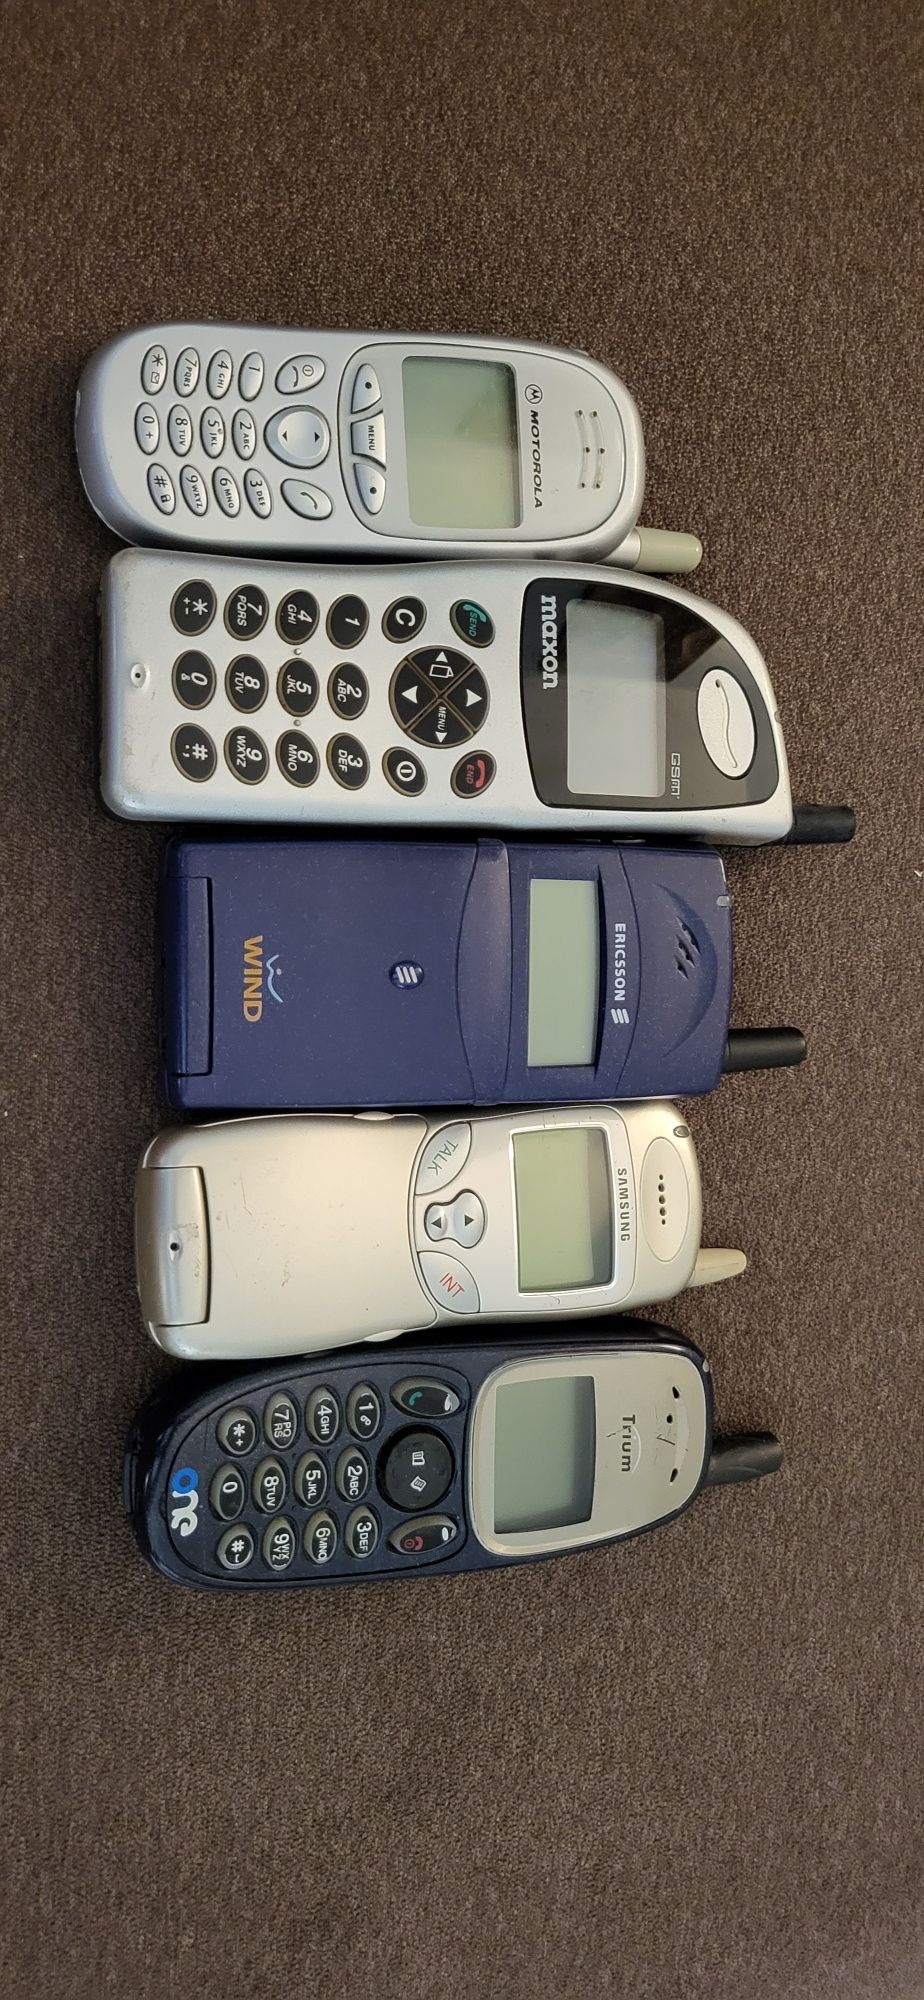 Colectie 5 telefoane vechi functionale Ericsson t18s !